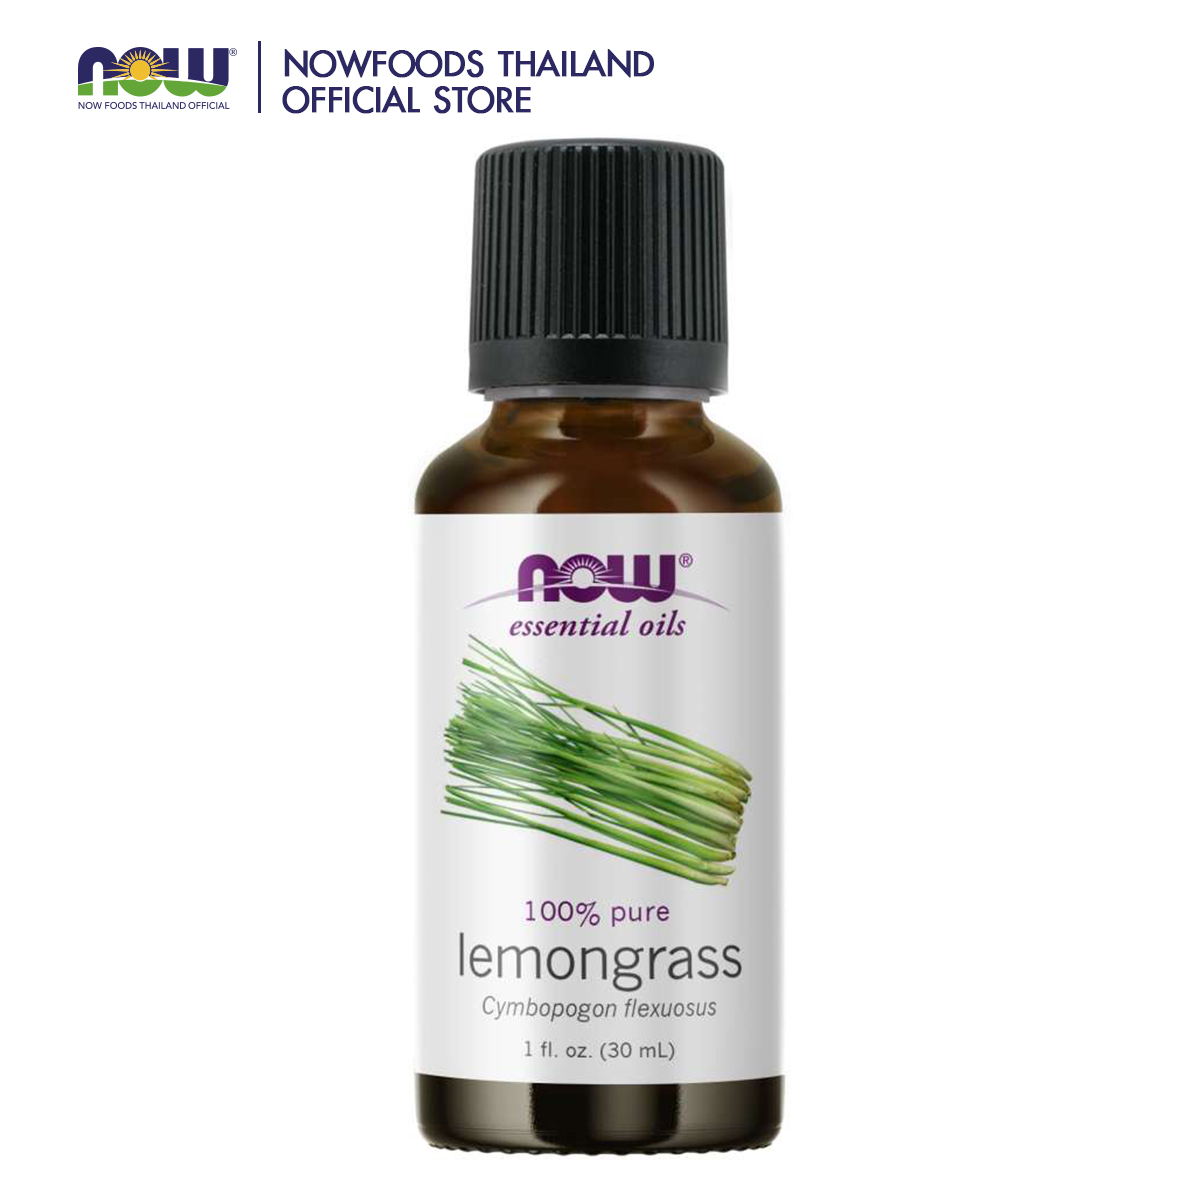 NOW Lemongrass Oil 1 fl. oz. (30 mL)